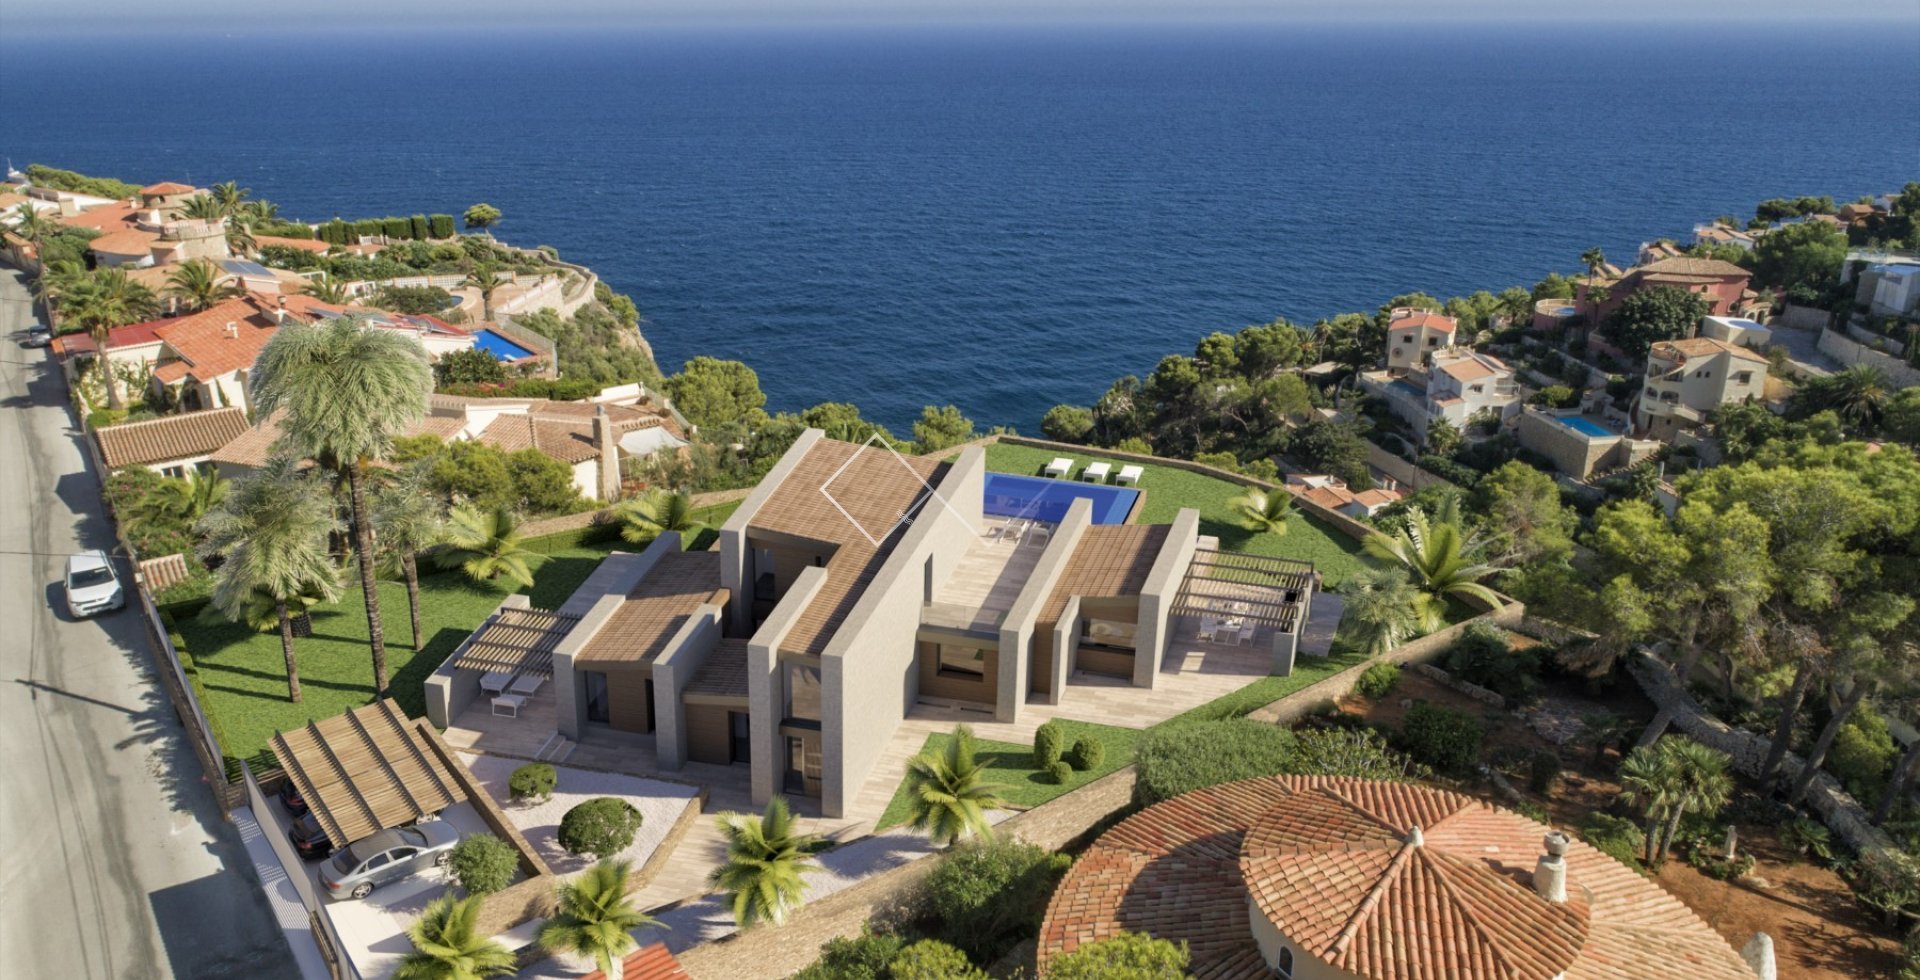 Vue sur la mer - Projet terminé. Luxueuse villa avec vue sur la mer à Javea